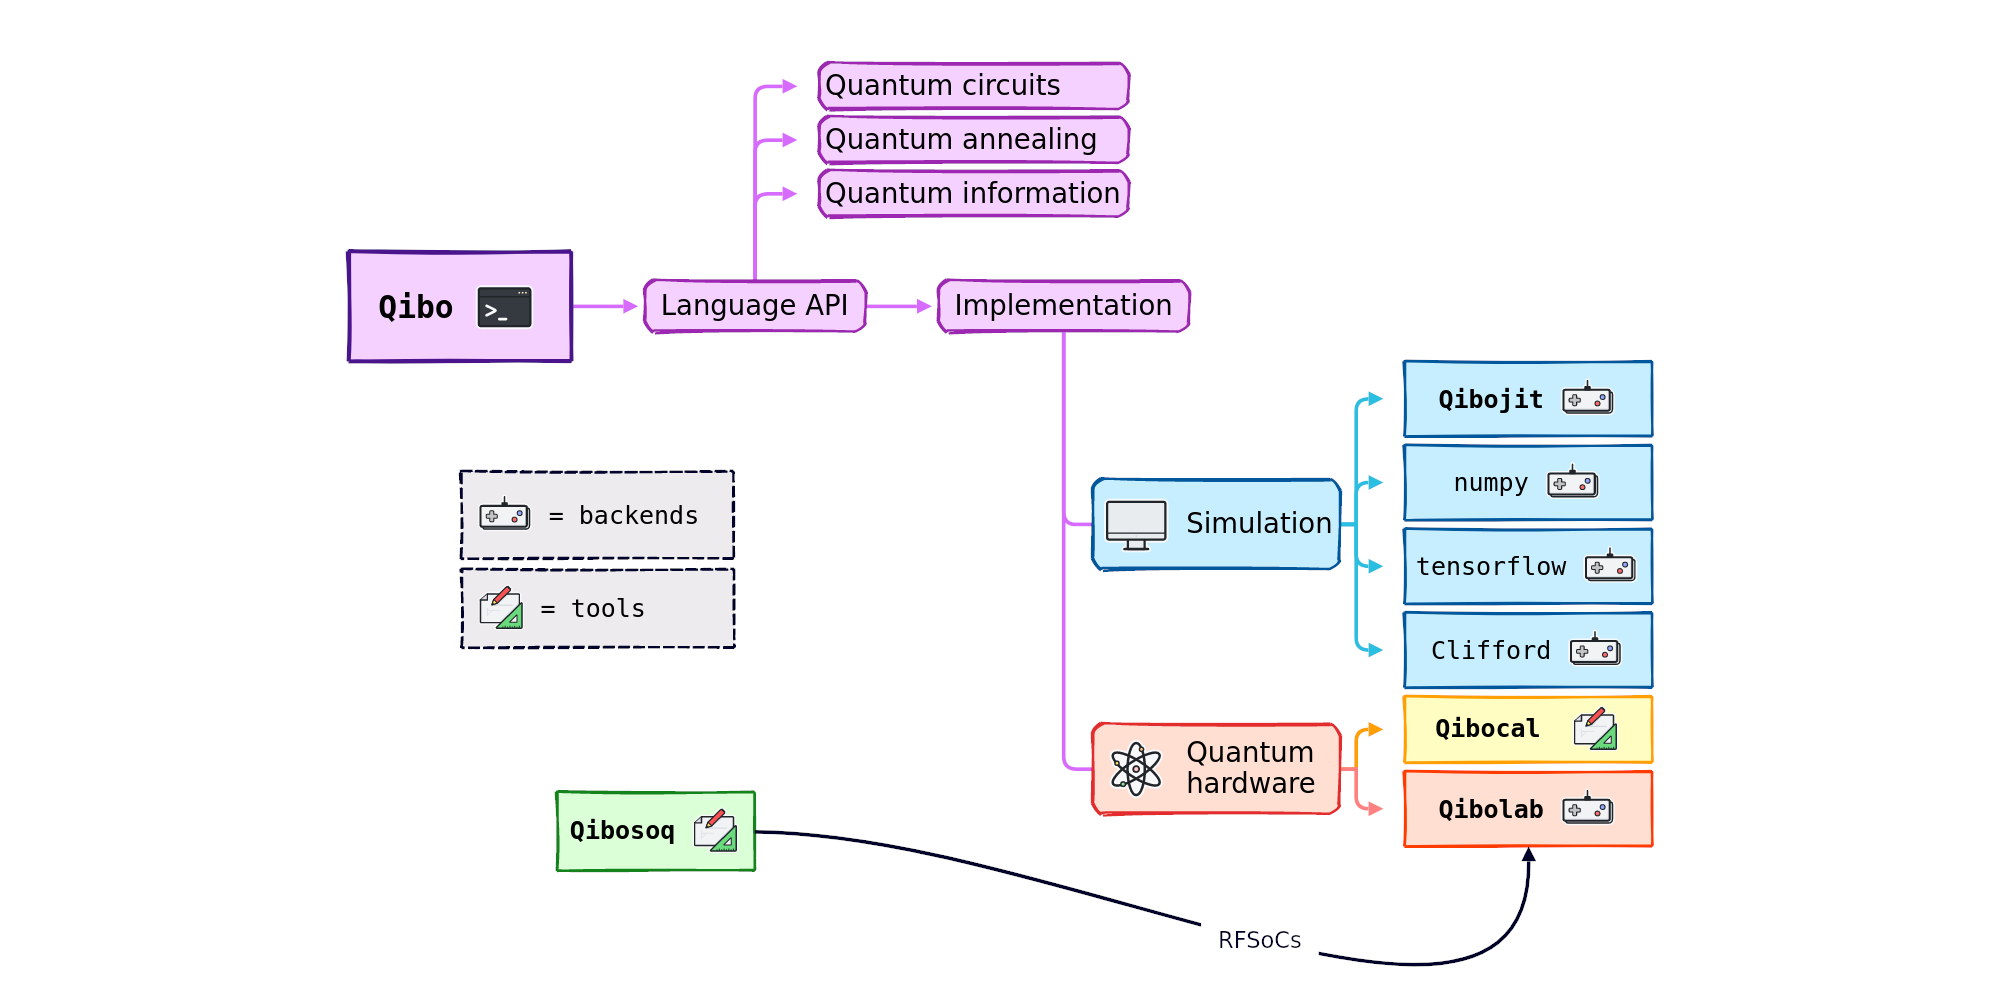 Qibolab: hybrydowy kwantowy system operacyjny typu open source